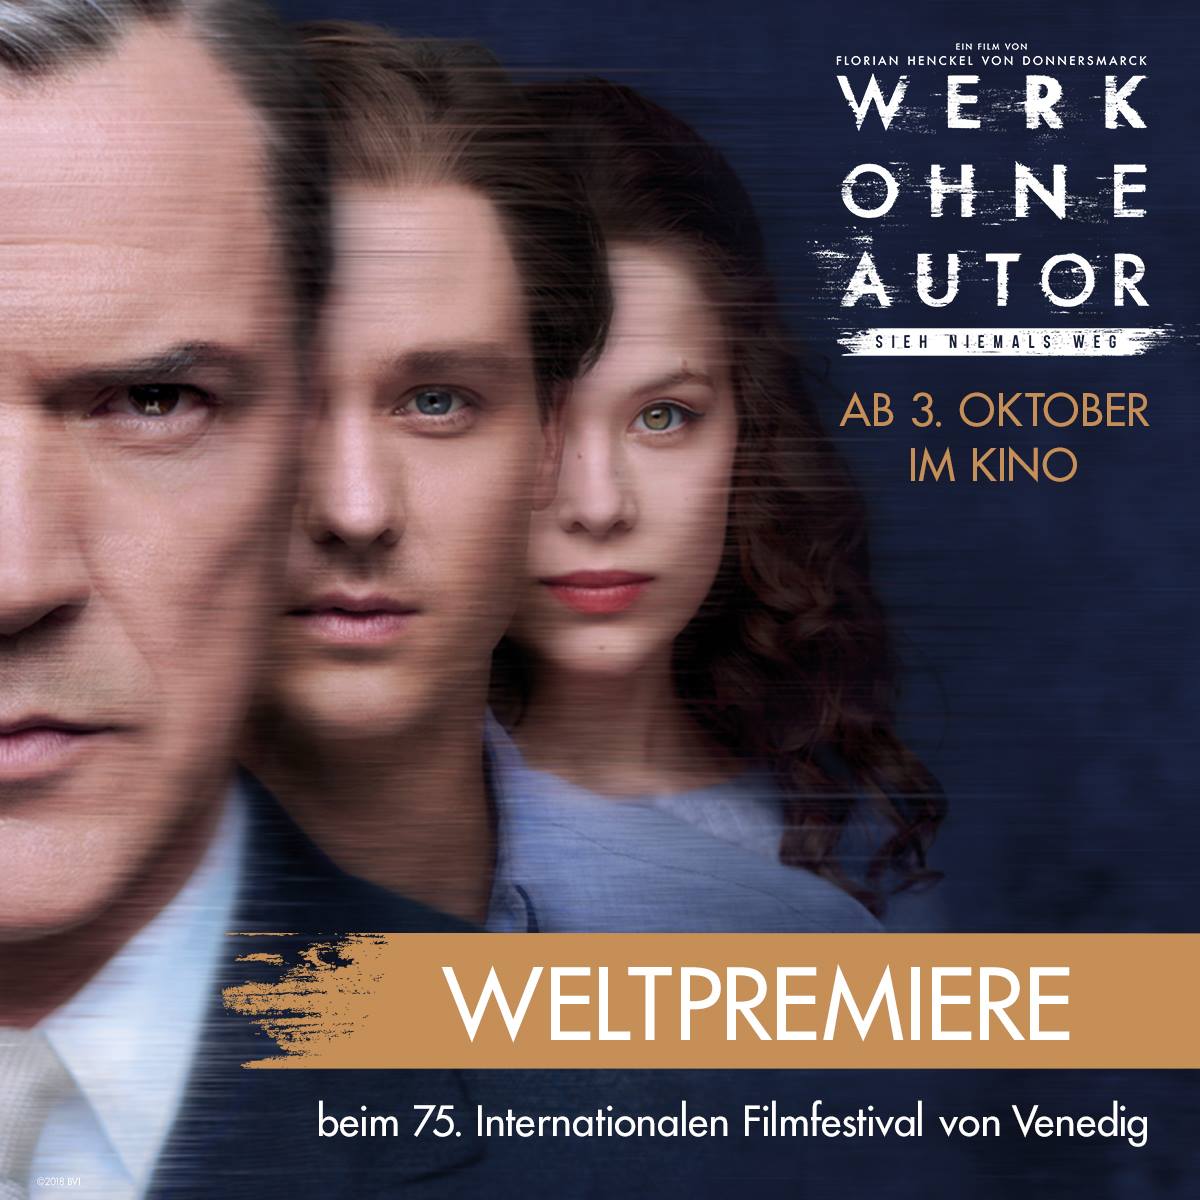 "Werk ohne Author" premiere in Venice